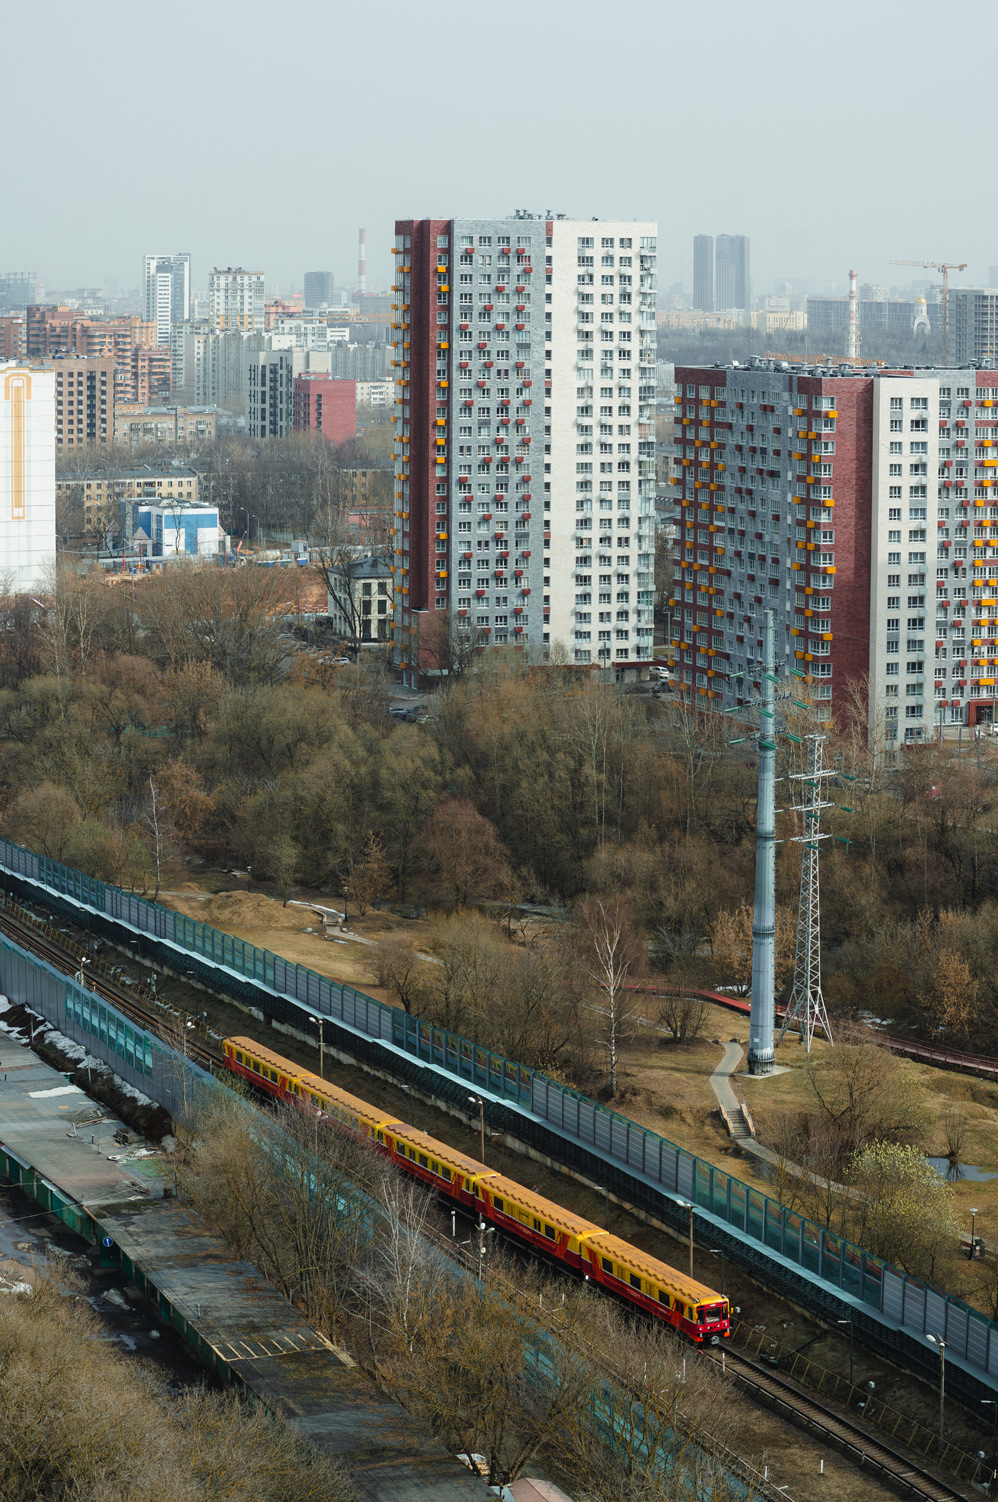 Moskva — Metro — [4] Filyovskaya Line; Moskva — Views from a height